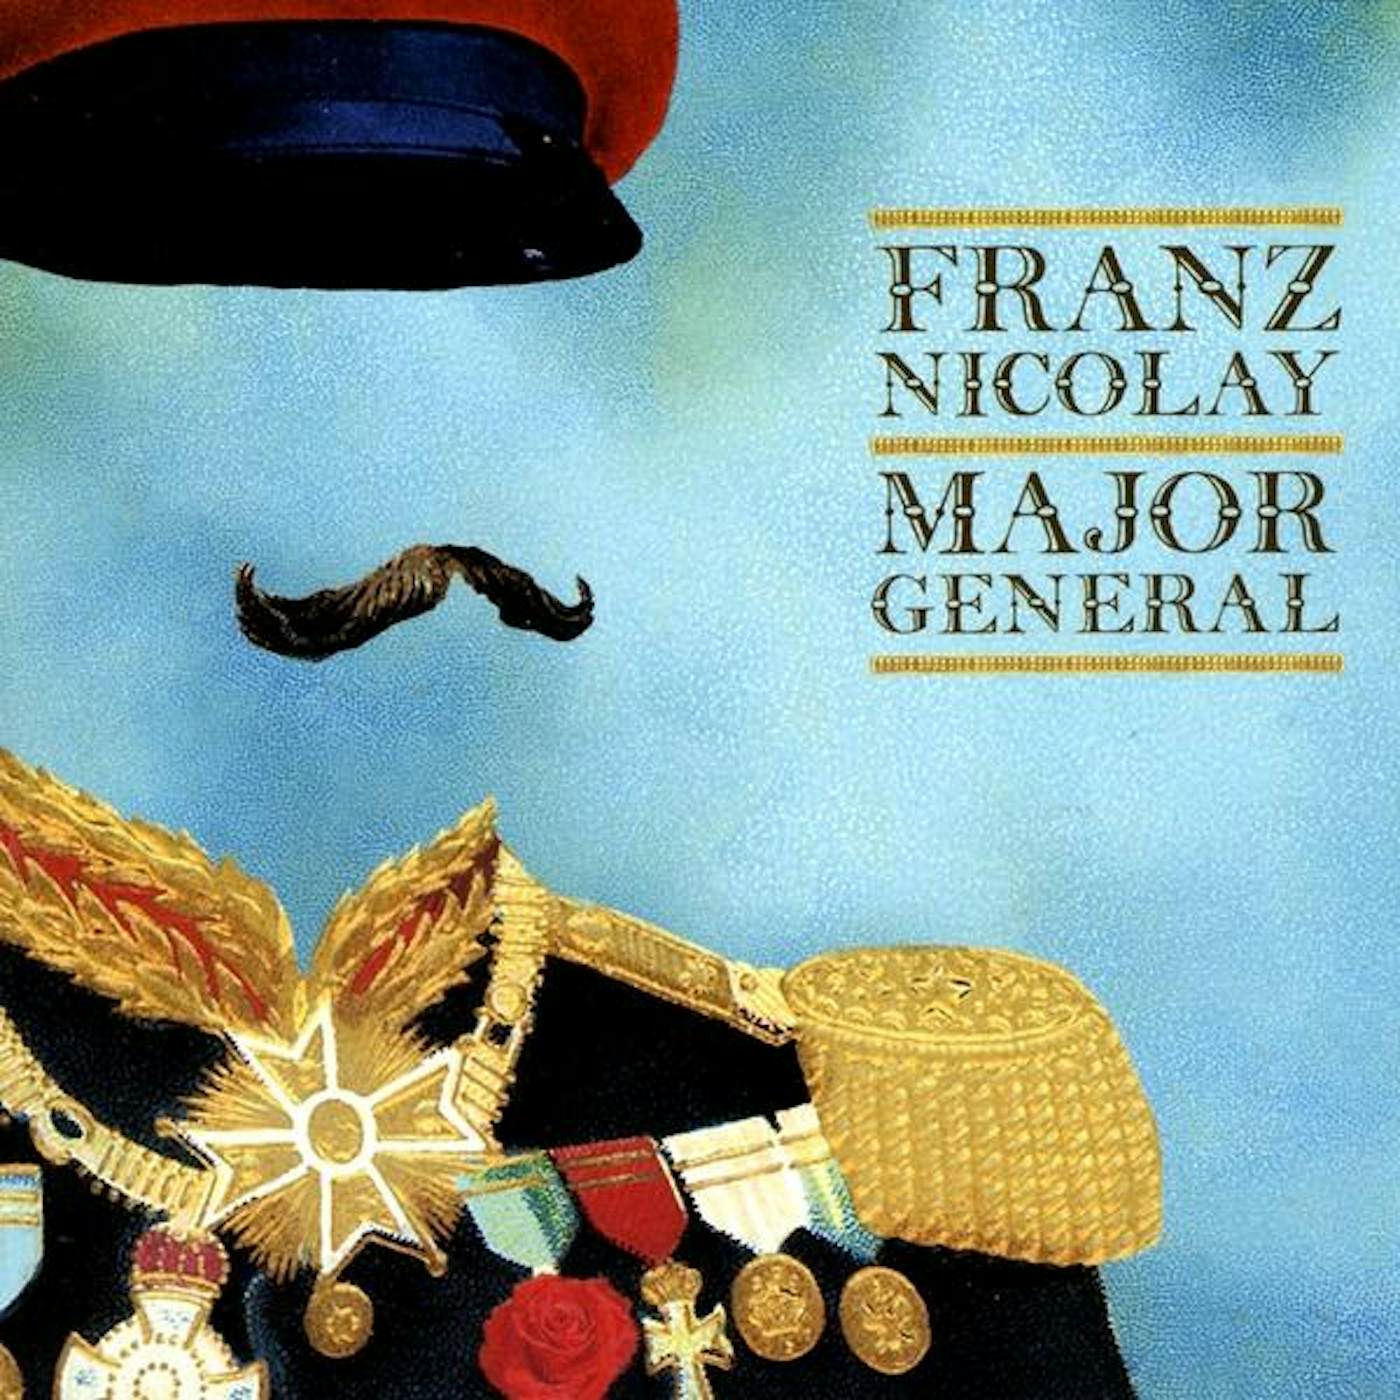 Franz Nicolay MAJOR GENERAL CD